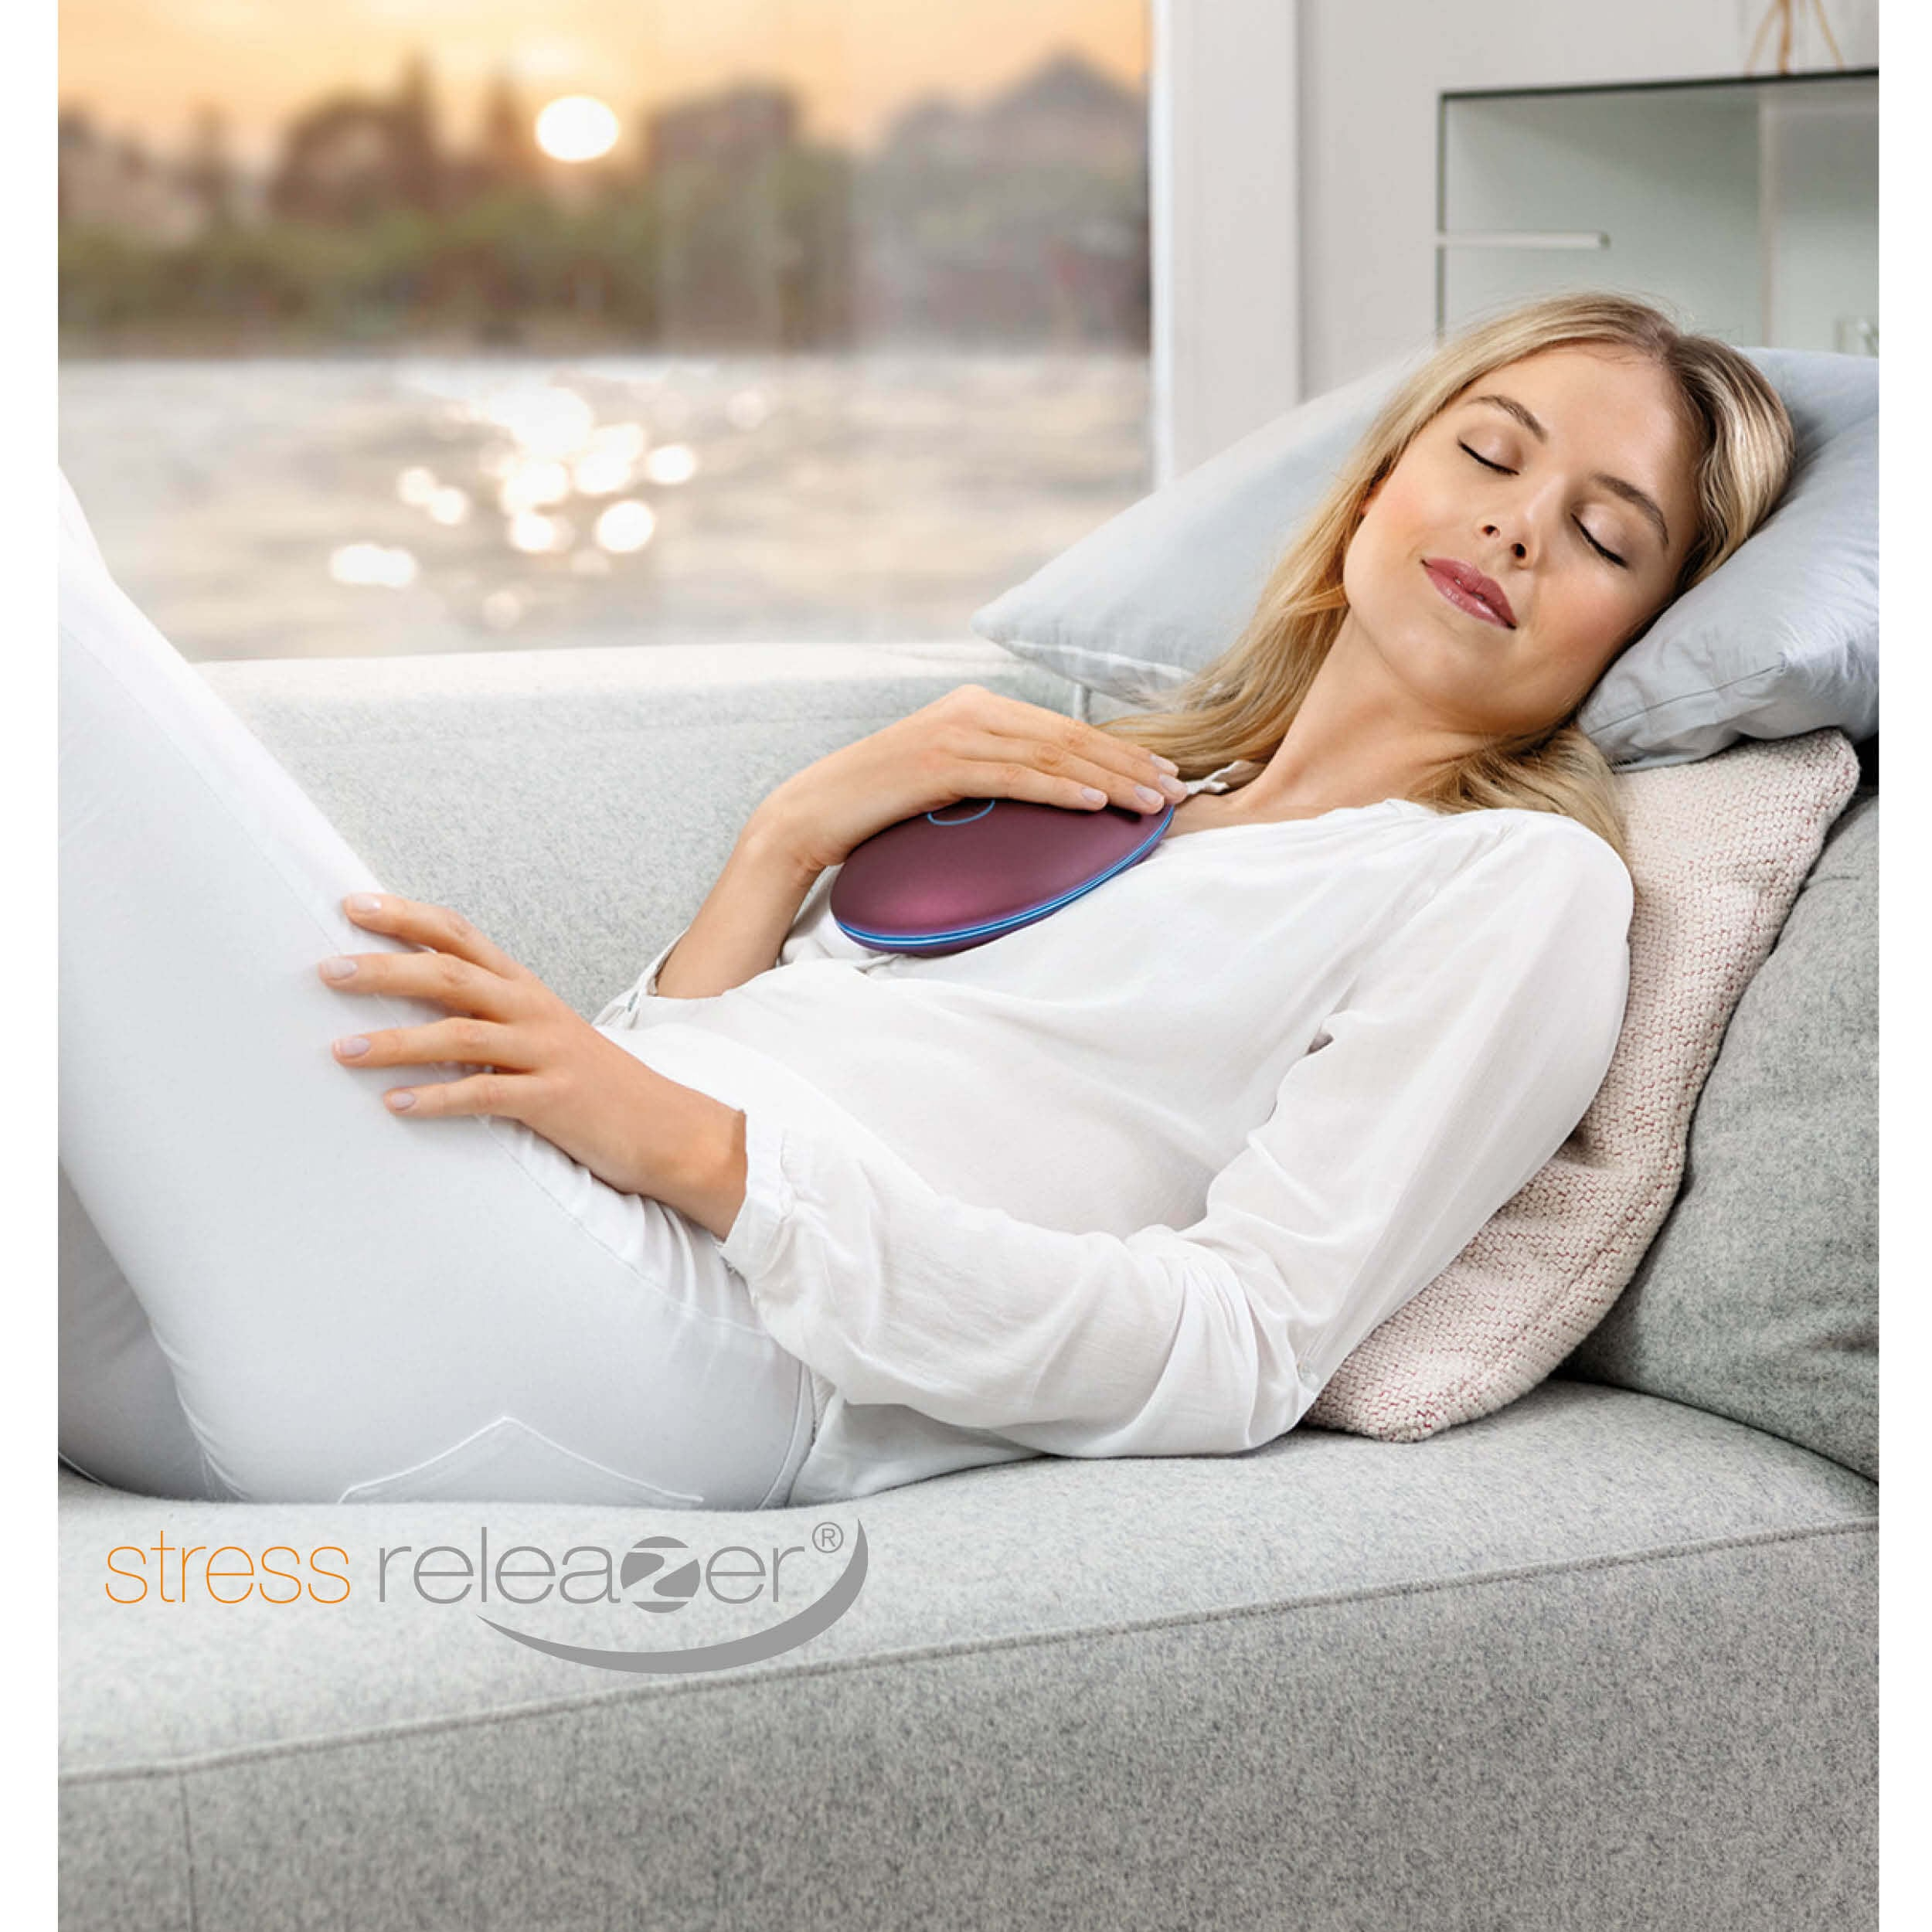 stress Atemtrainer releaZer® Gerät und Entspannungshilfe BEURER in einem